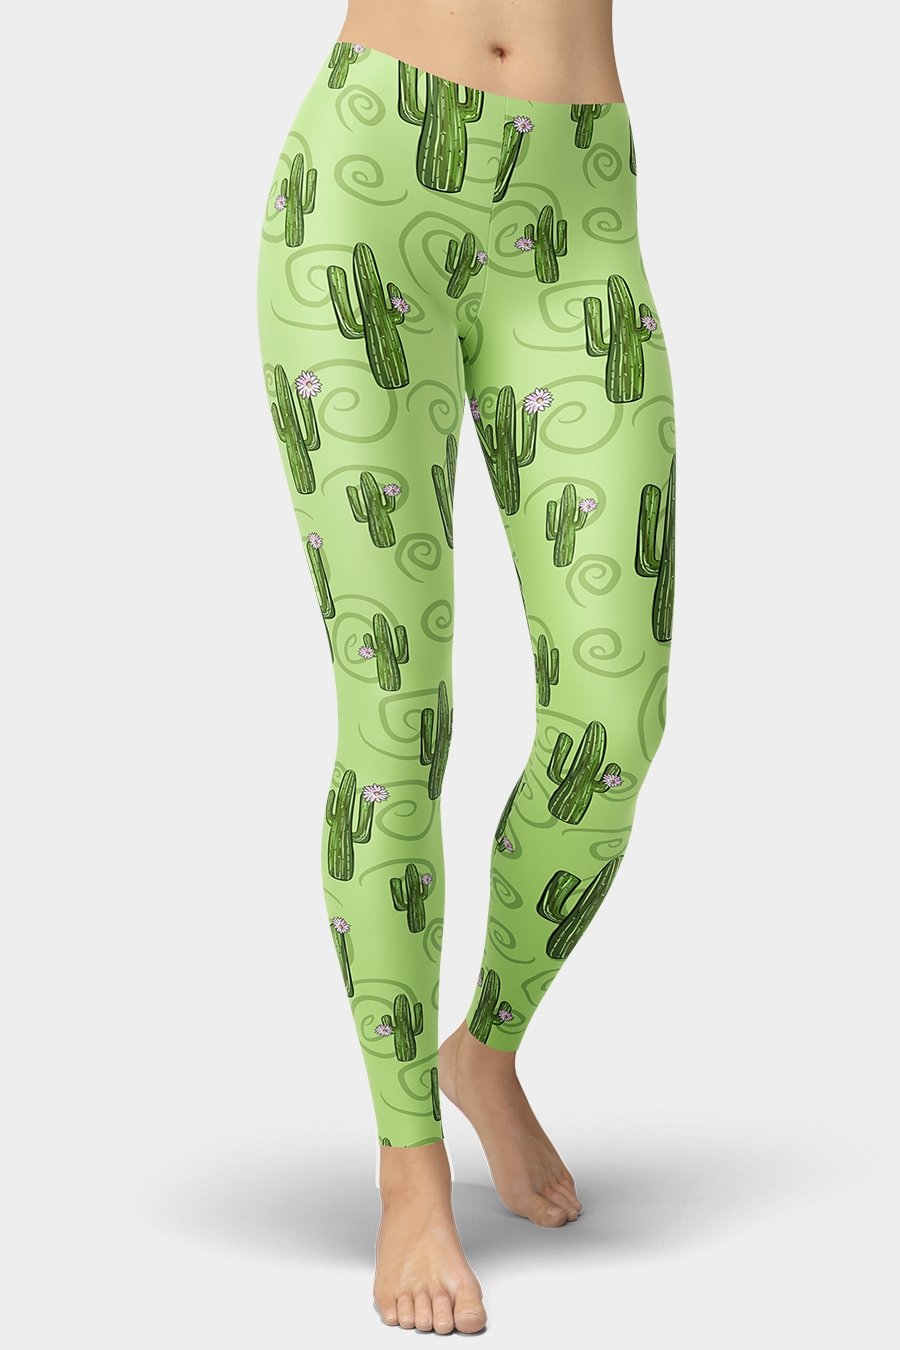 Green Cactus Printed Leggings - SeeMyLeggings